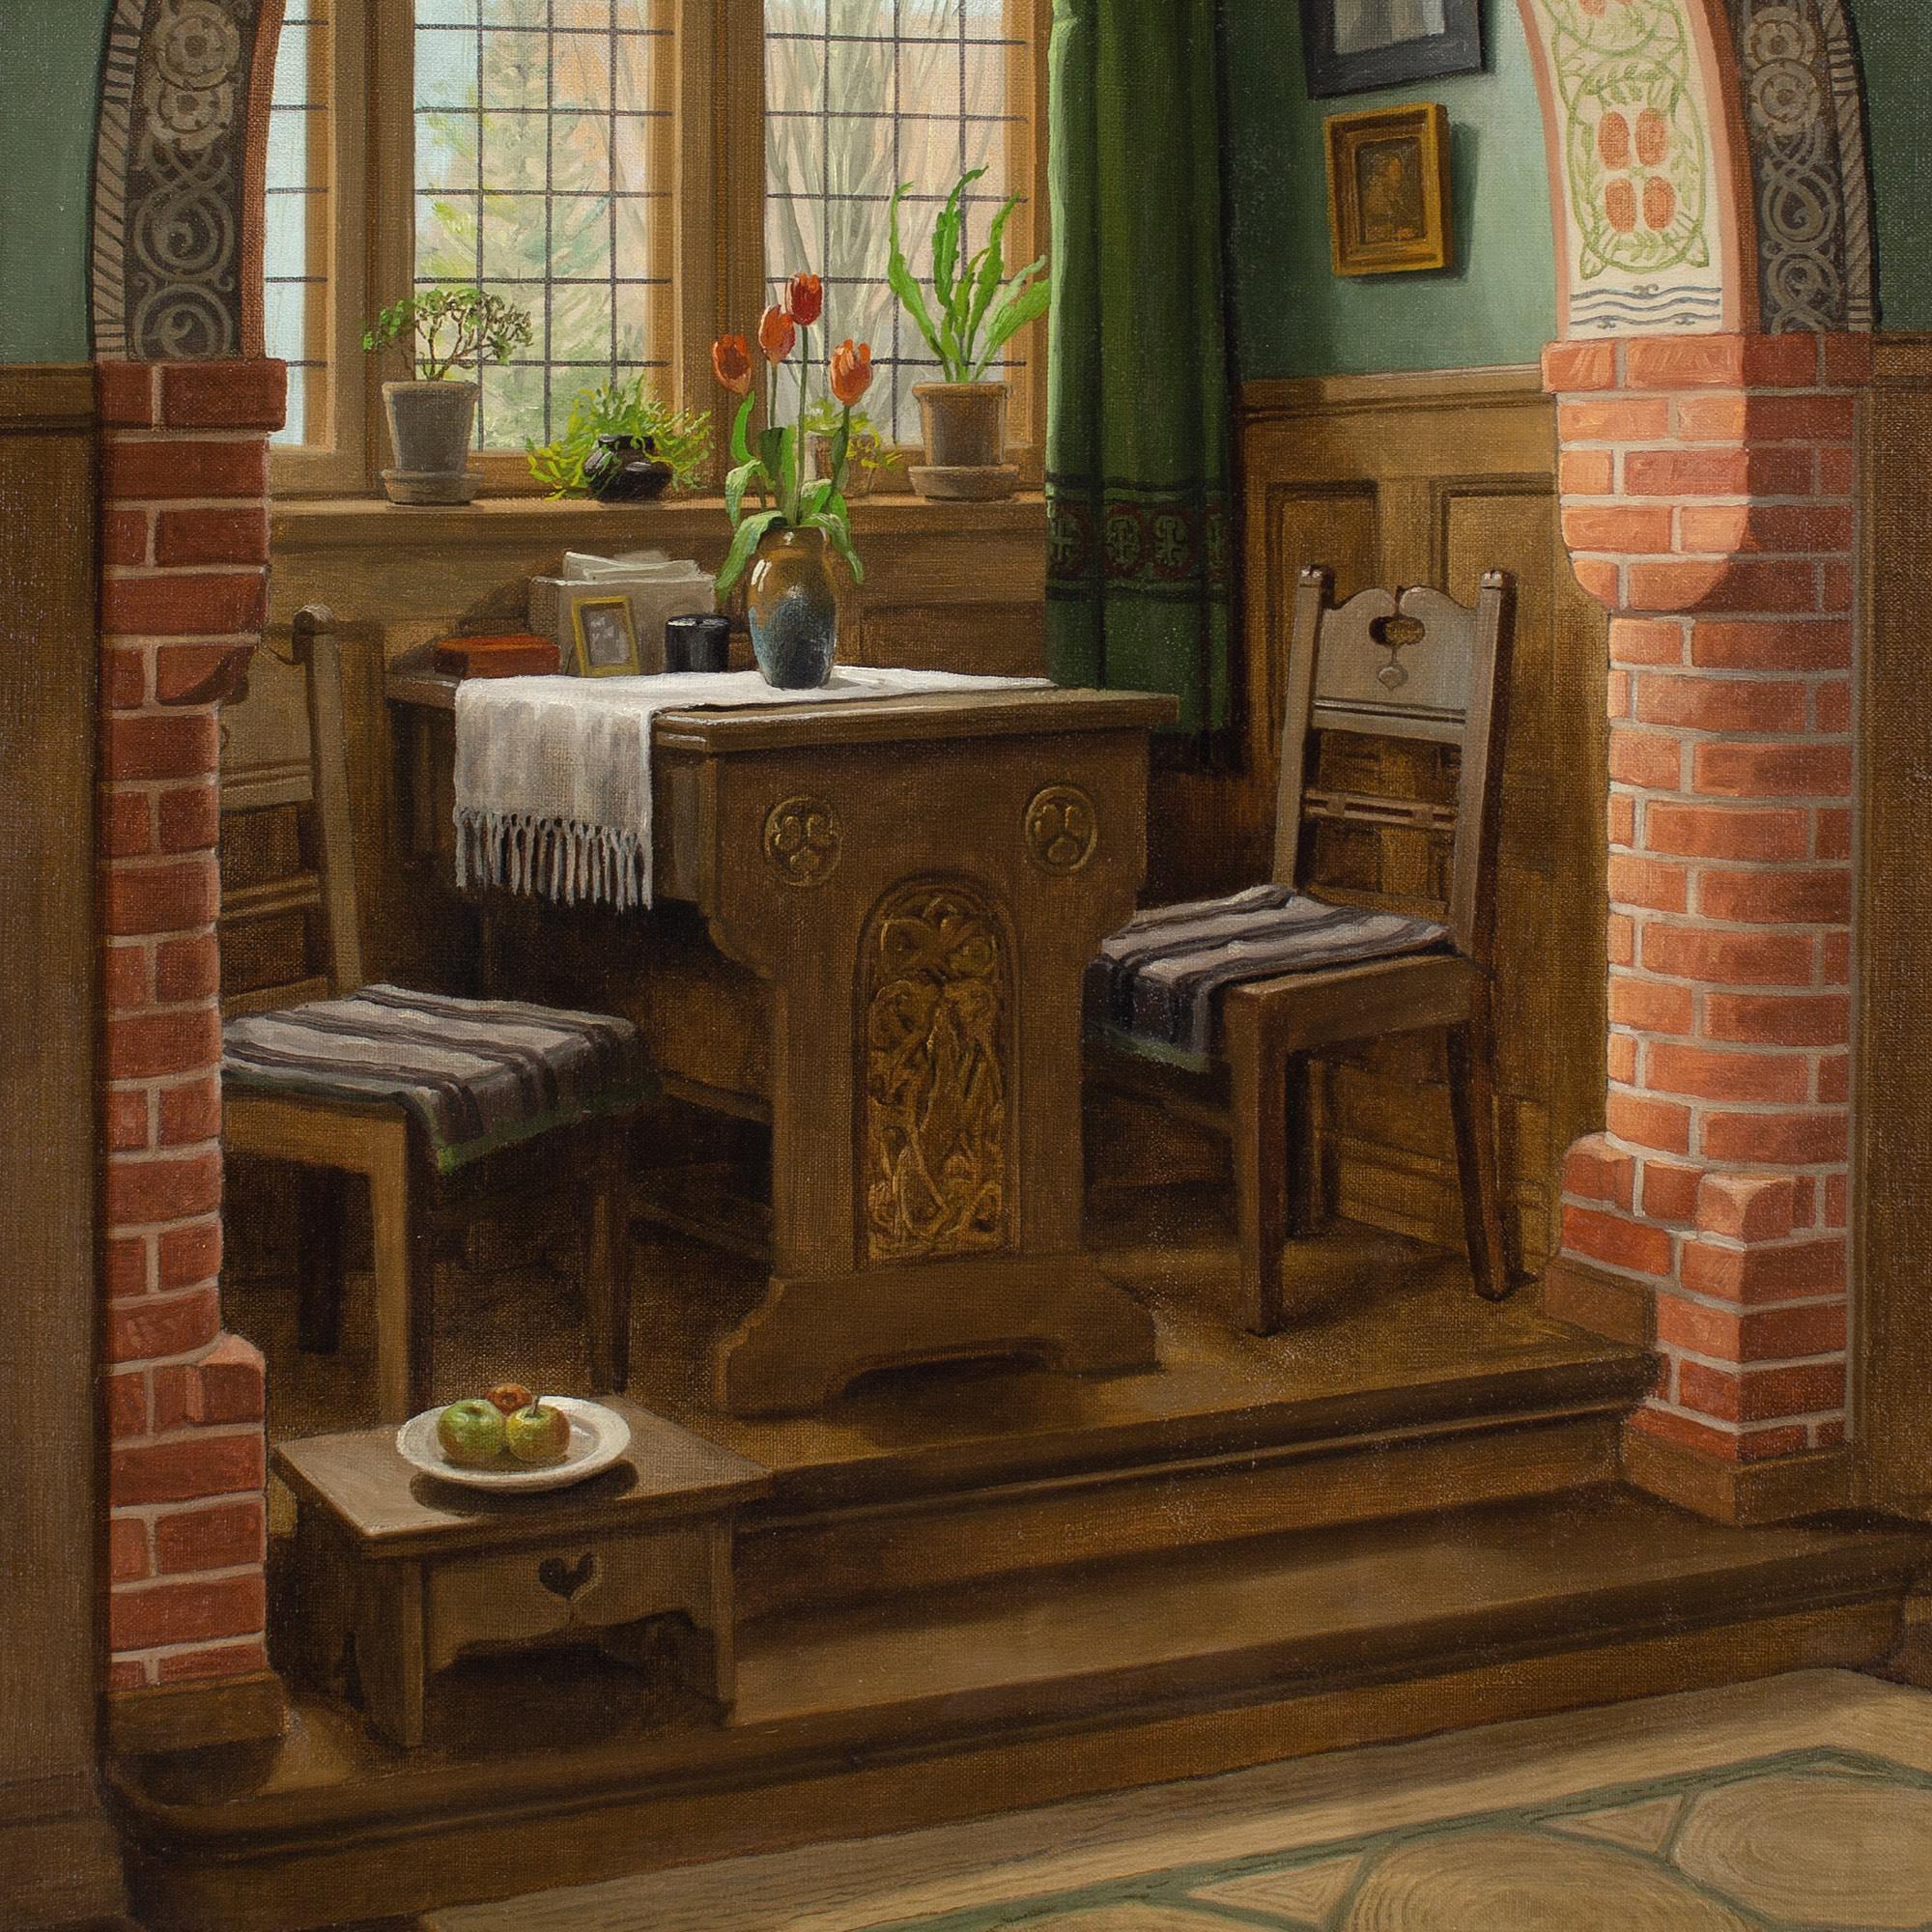 C Sorensen, Interior With Arch & Dining Nook 3